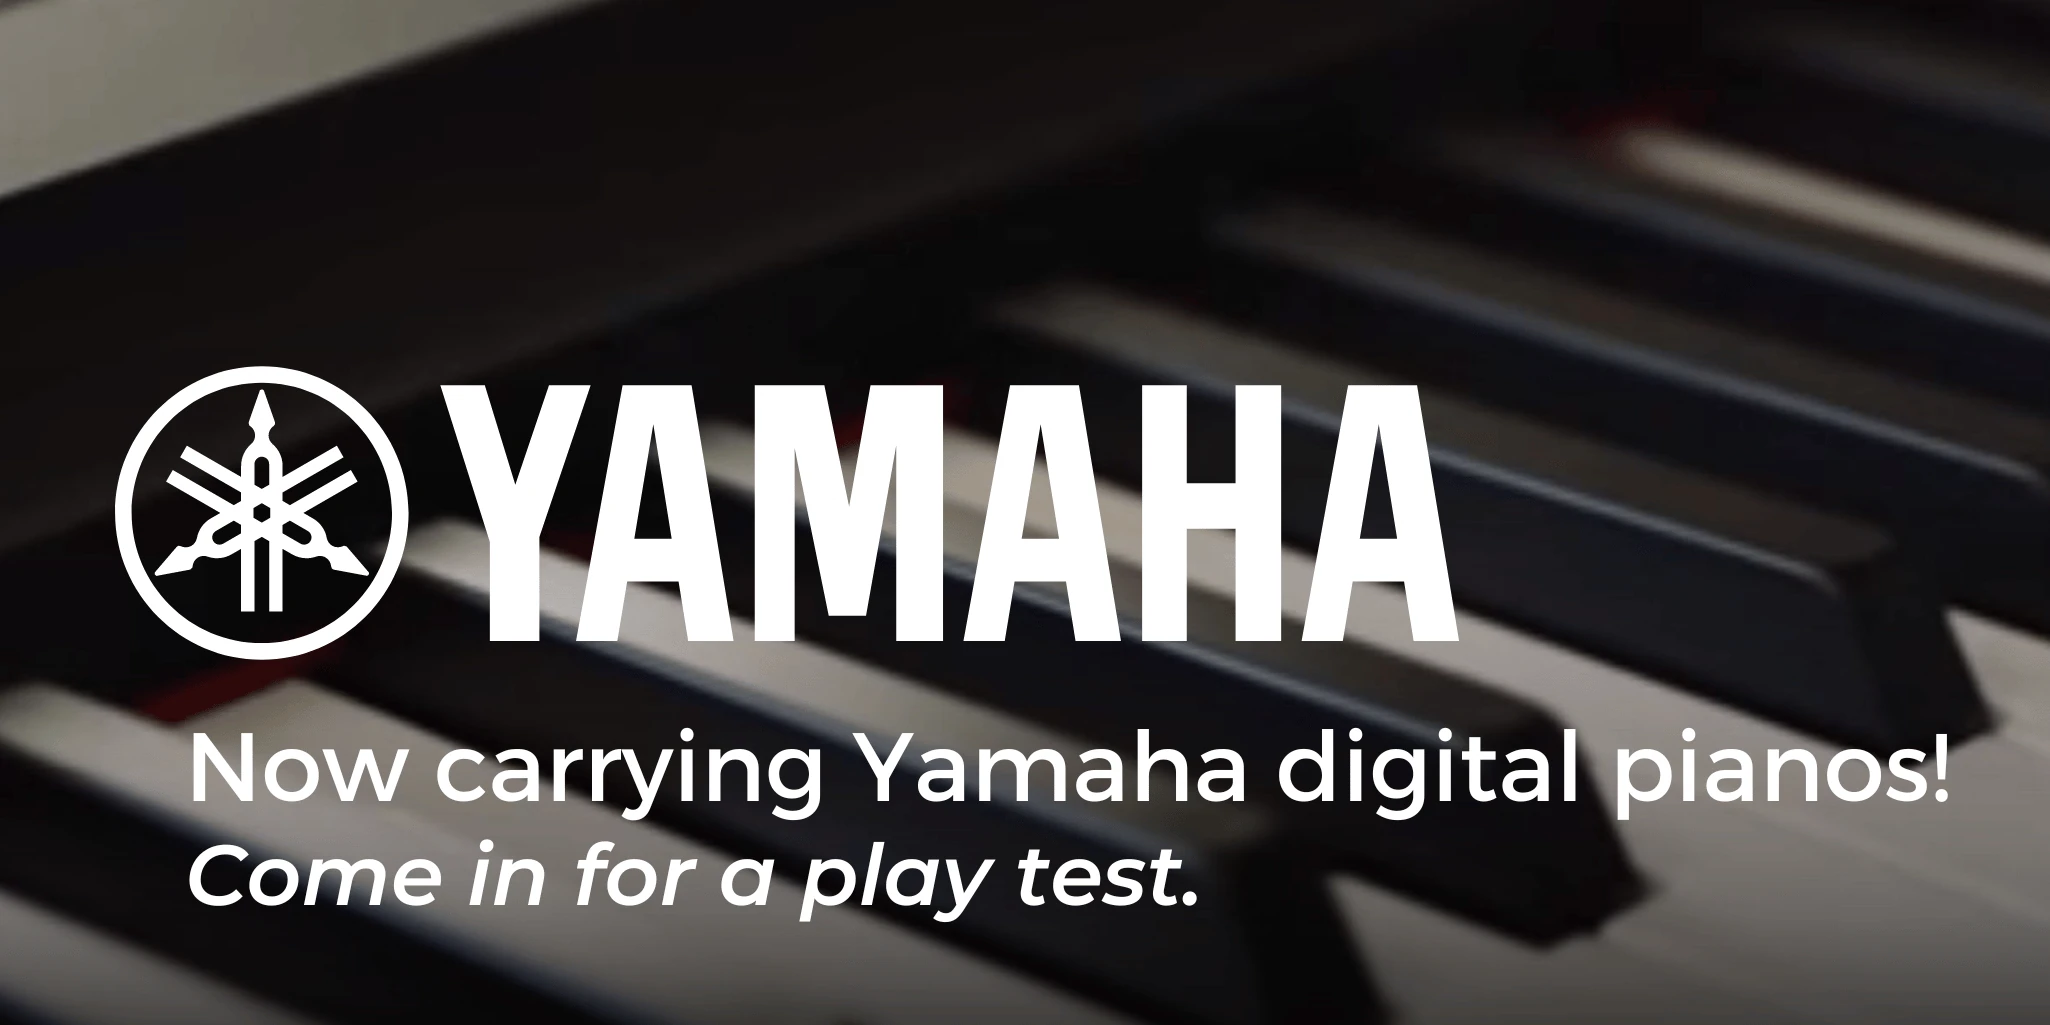 Now carrying Yamaha digital pianos